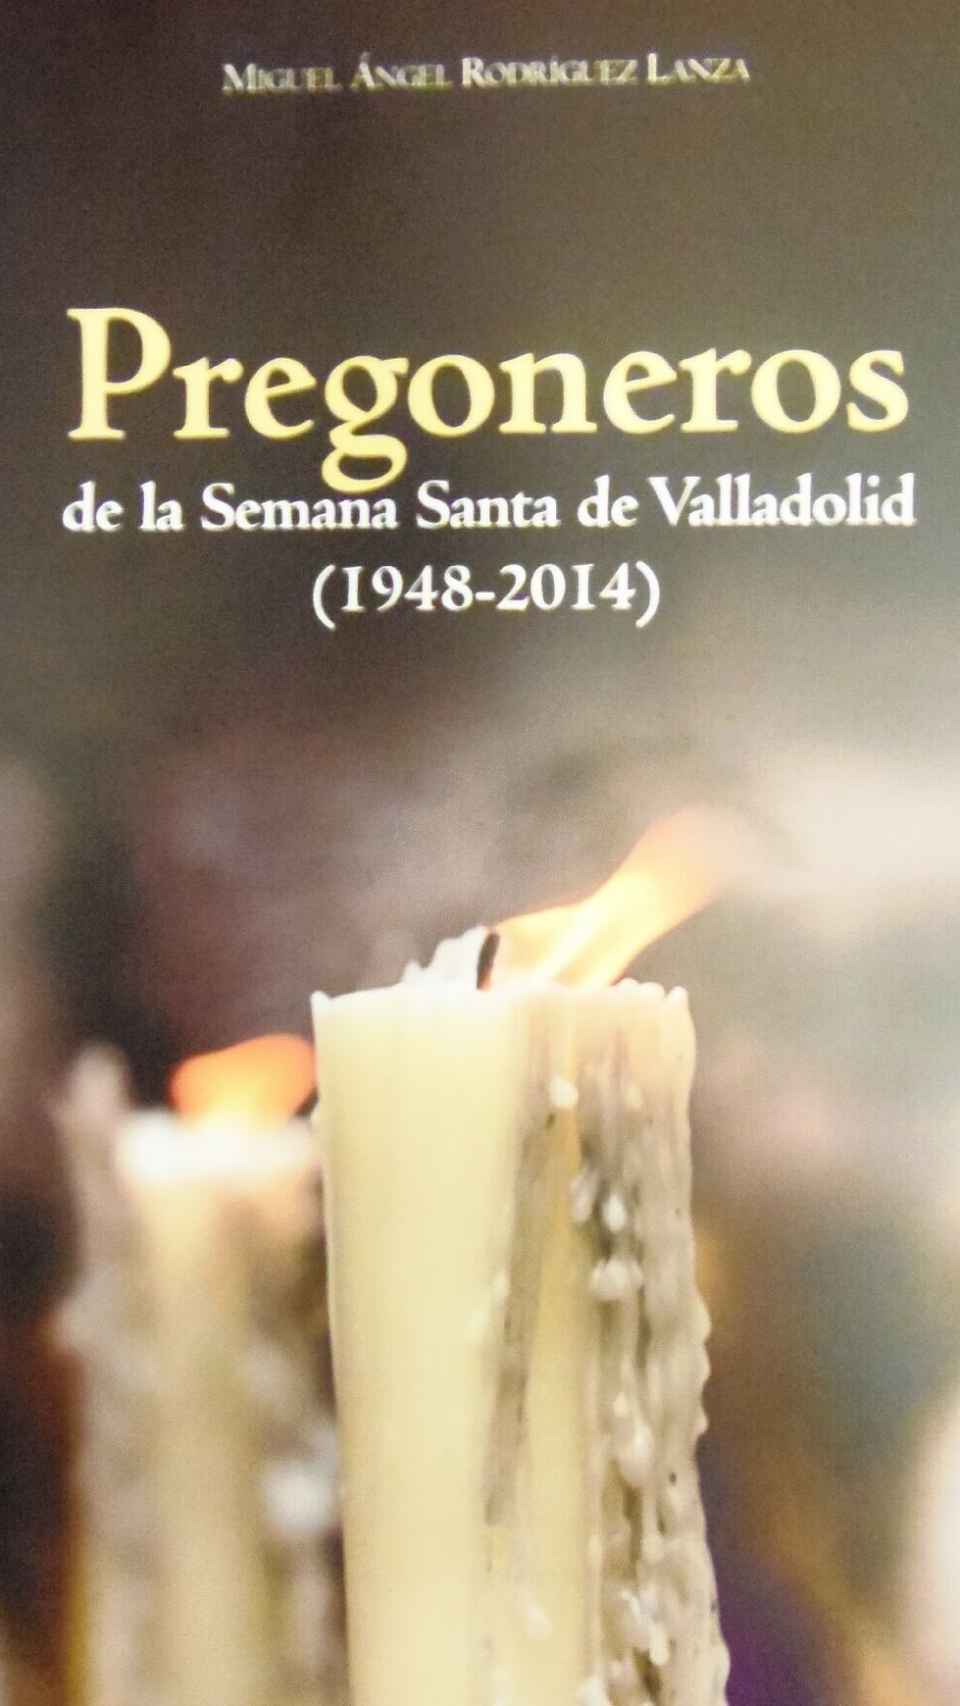 Pregoneros de la Semana Santa de Valladolid 1948-2014